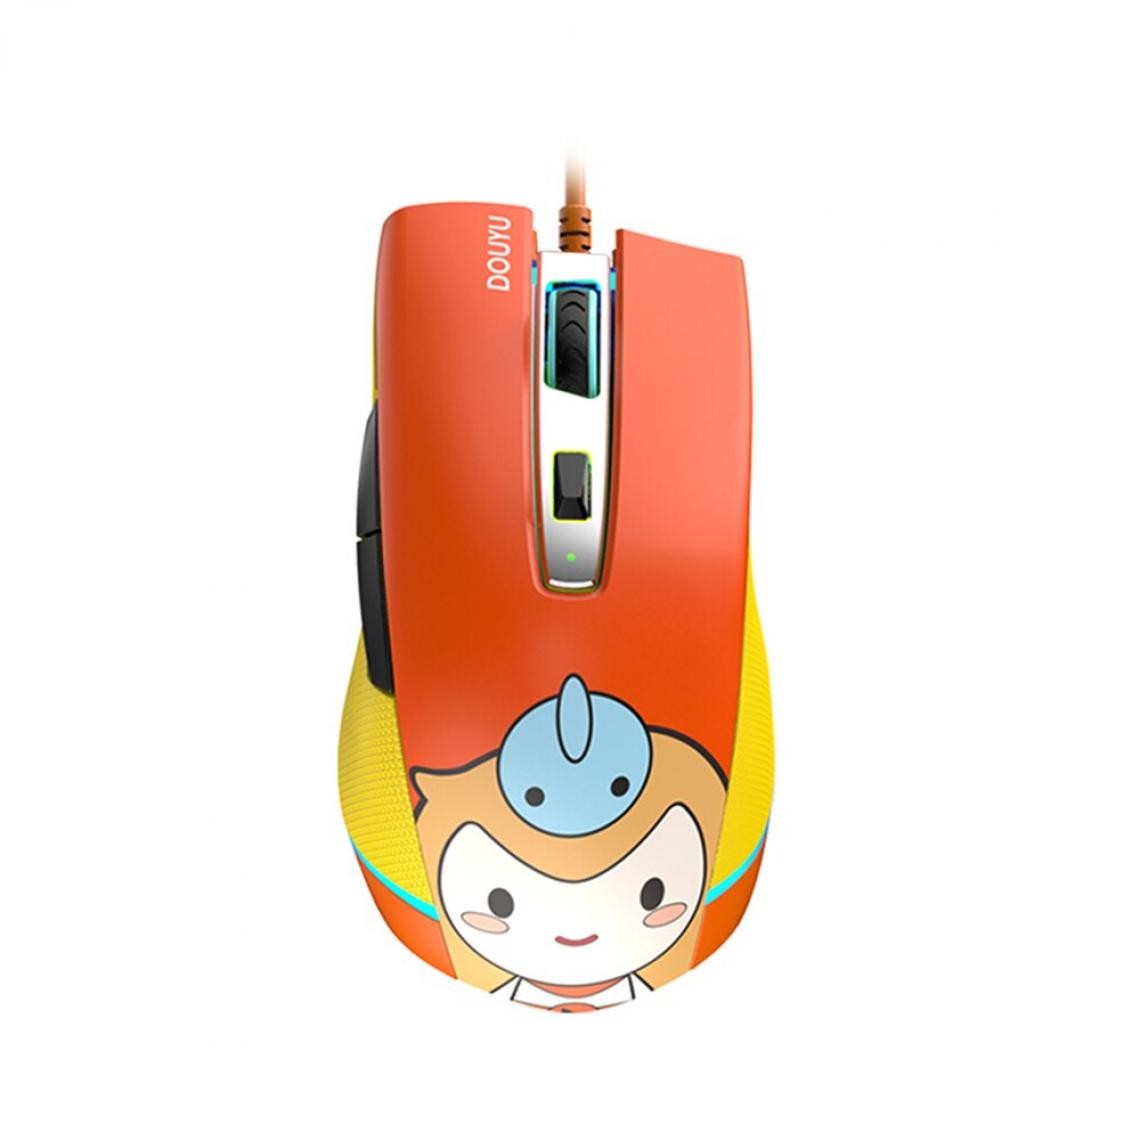 Universal - Souris gaming câblée 16000dpi Gaming/Office Double Mode Mouse Ordinateur portable Ordinateur de bureau Accessoires Mouse (orange) - Souris